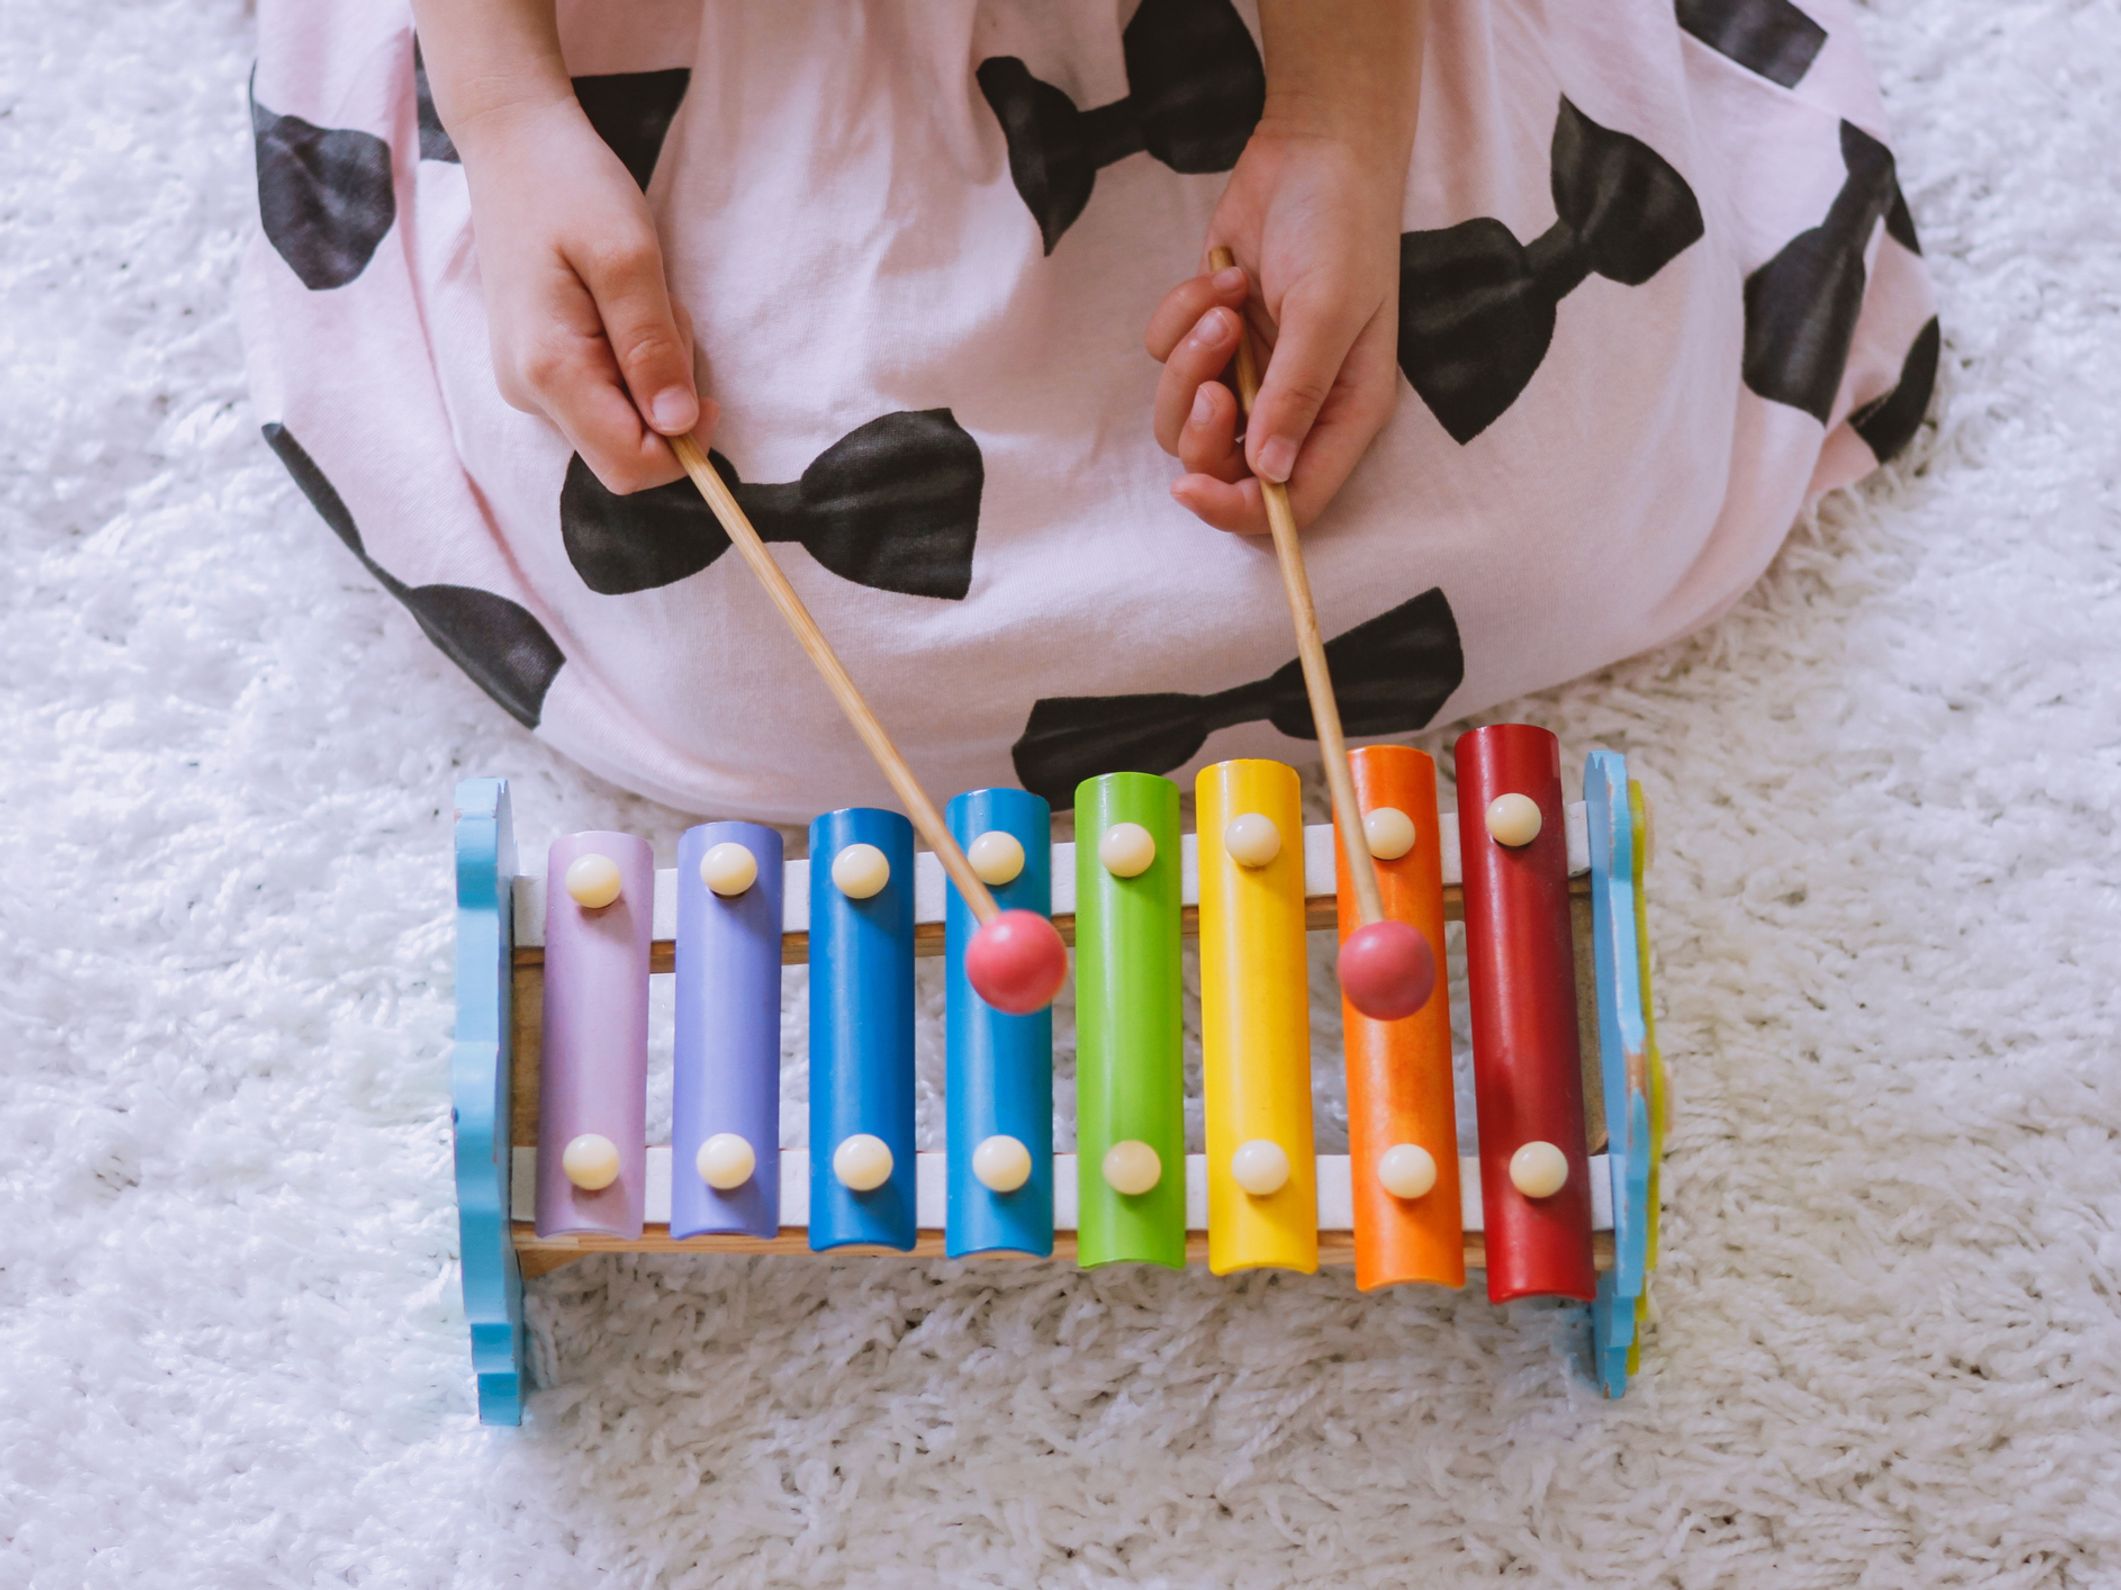 Instruments et jouets musicaux pour enfants et bébés – Boutique